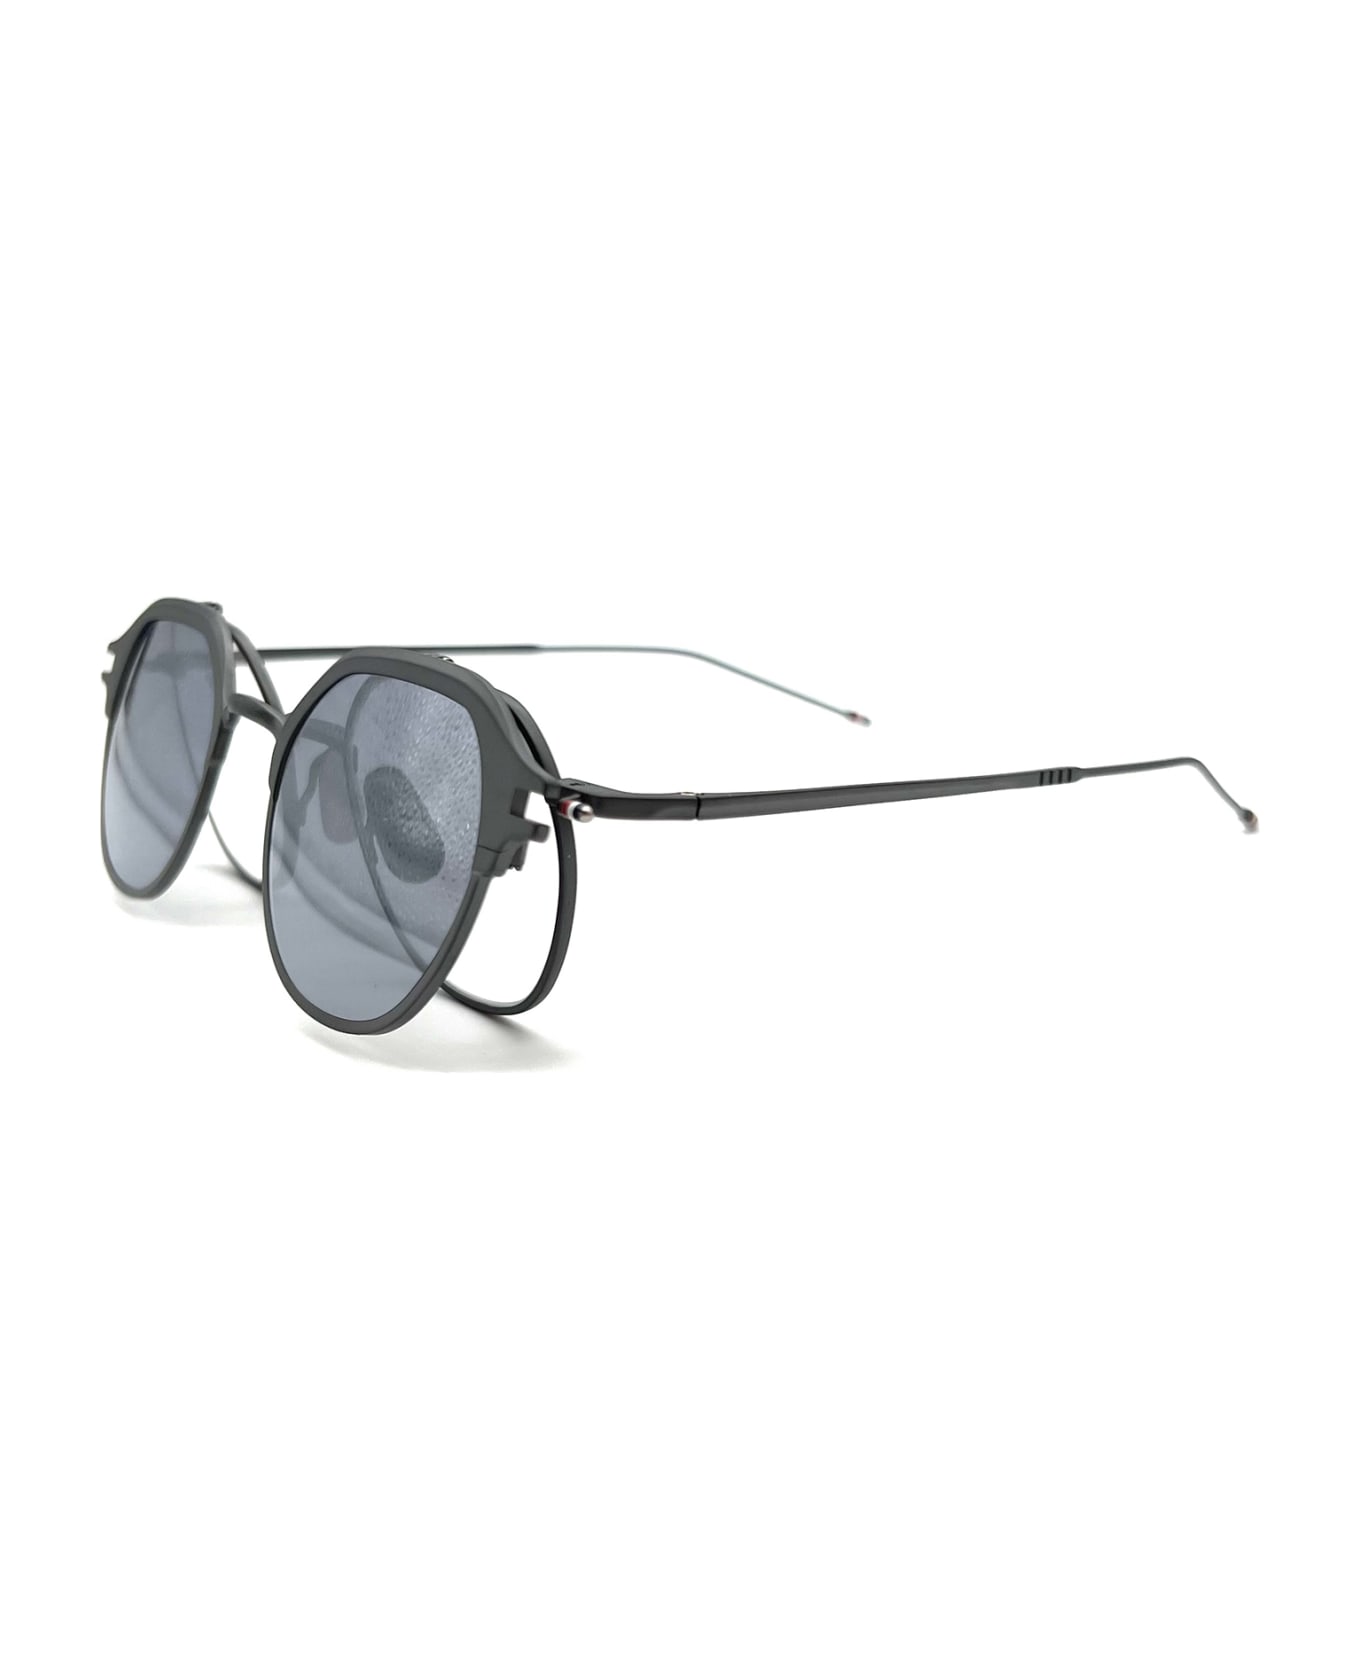 Thom Browne Ues812a/g0001 Sunglasses サングラス